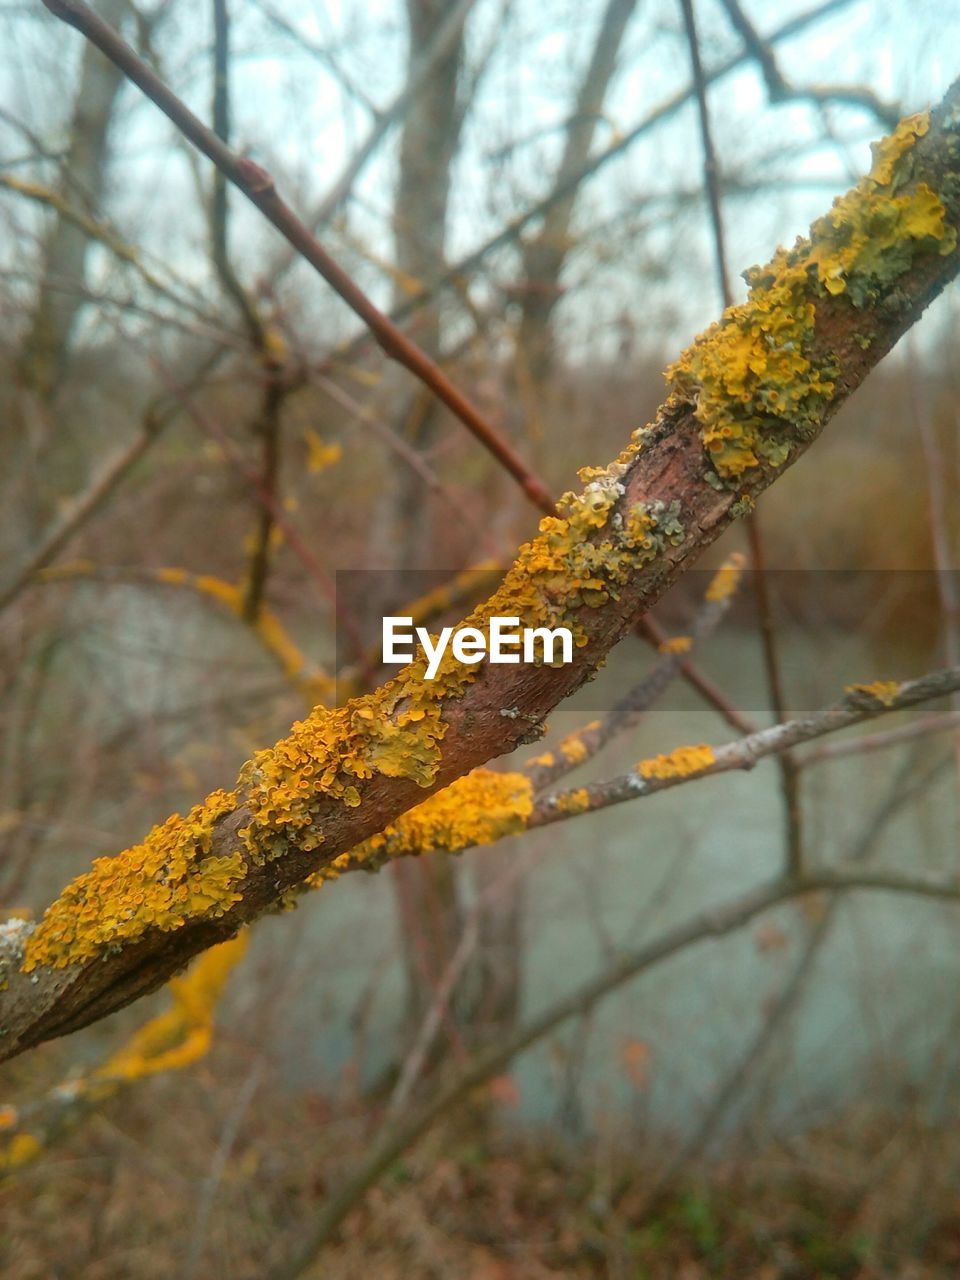 Lichen growing on tree trunk